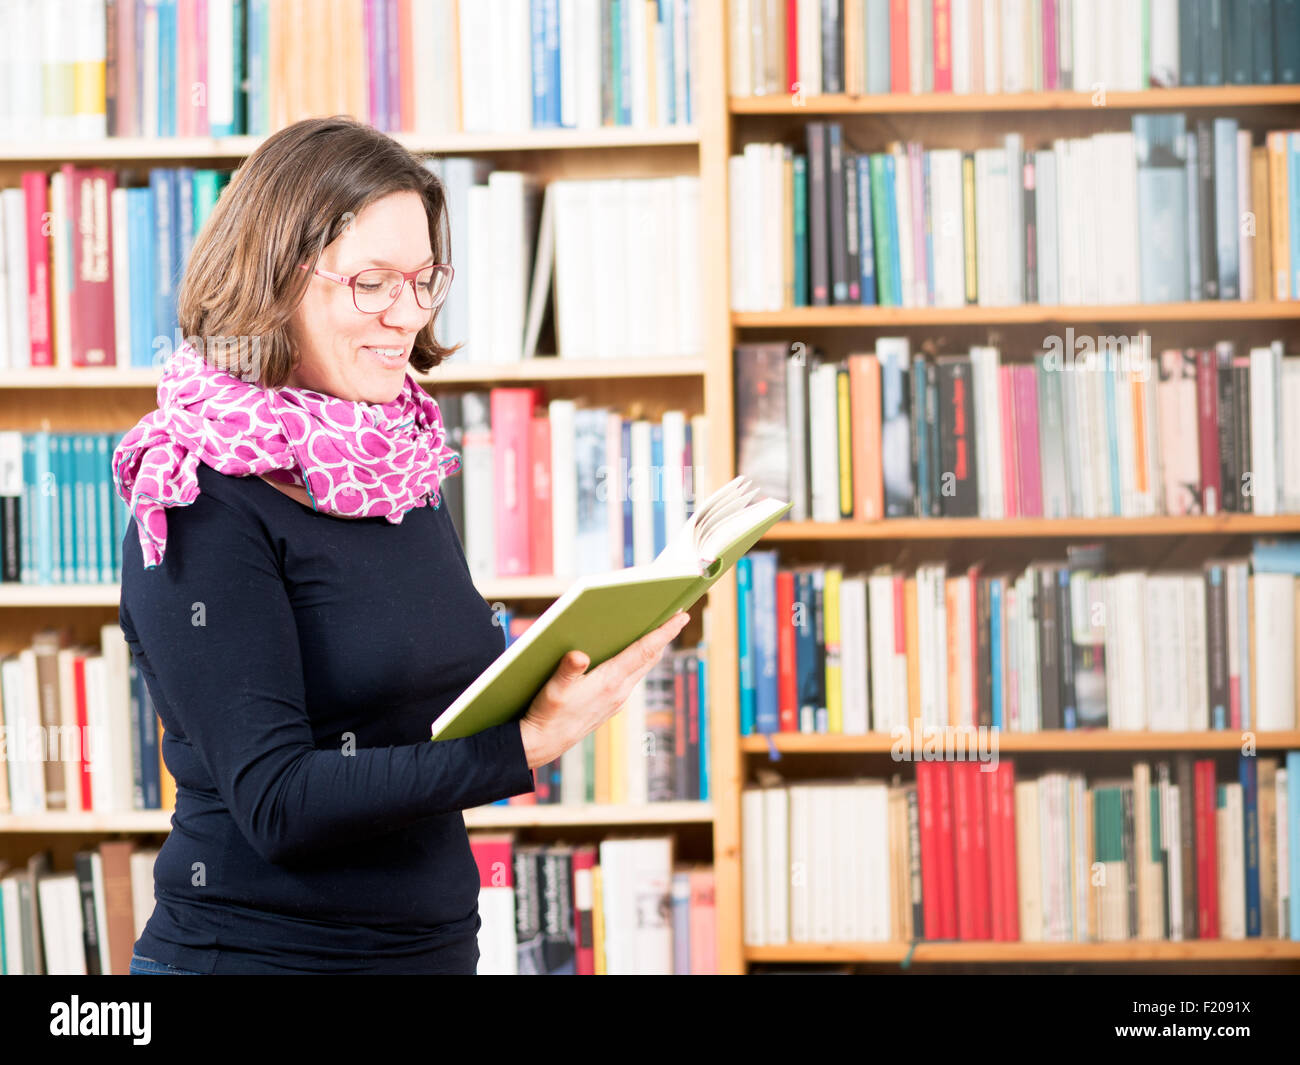 Frau liest Buch in Bibliothek Foto Stock